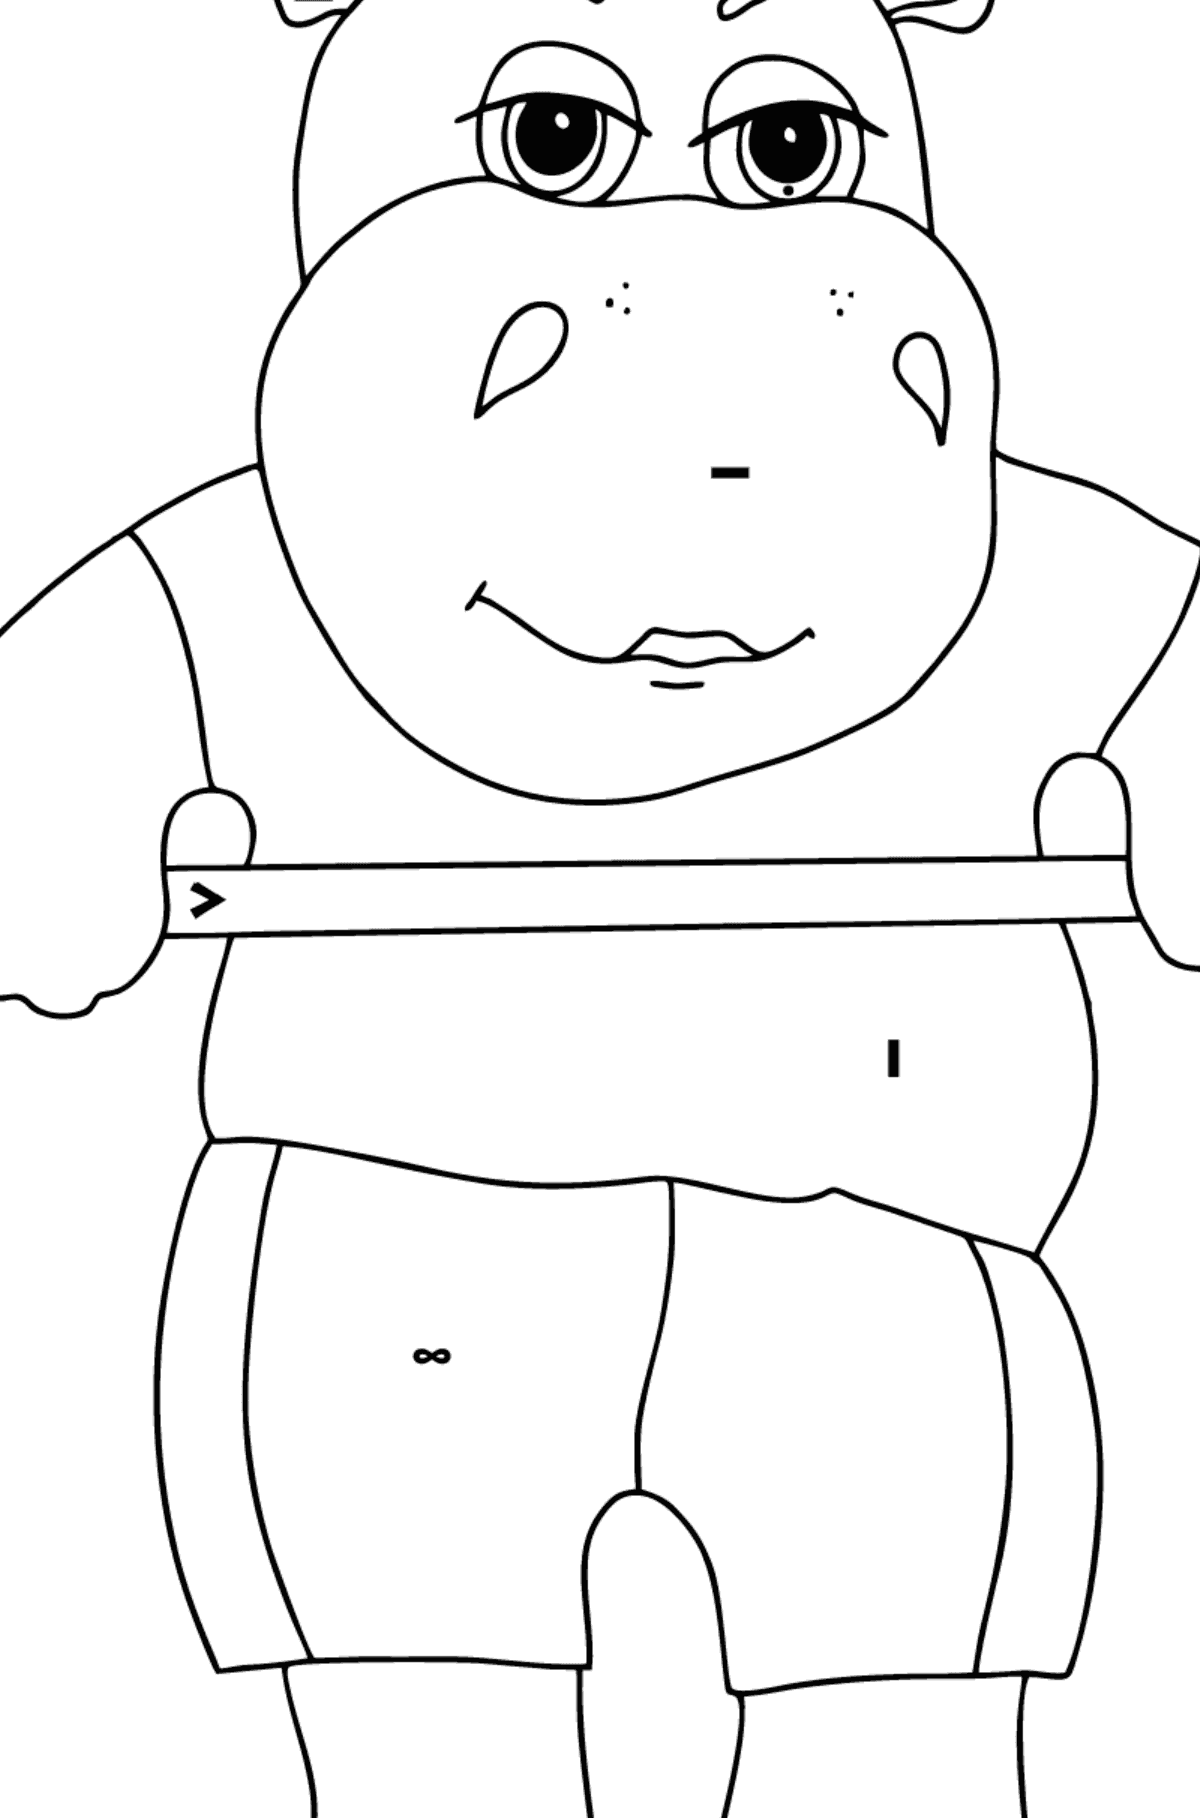 Dibujo de Hipopótamo atlético (simple) para colorear - Colorear por Símbolos para Niños